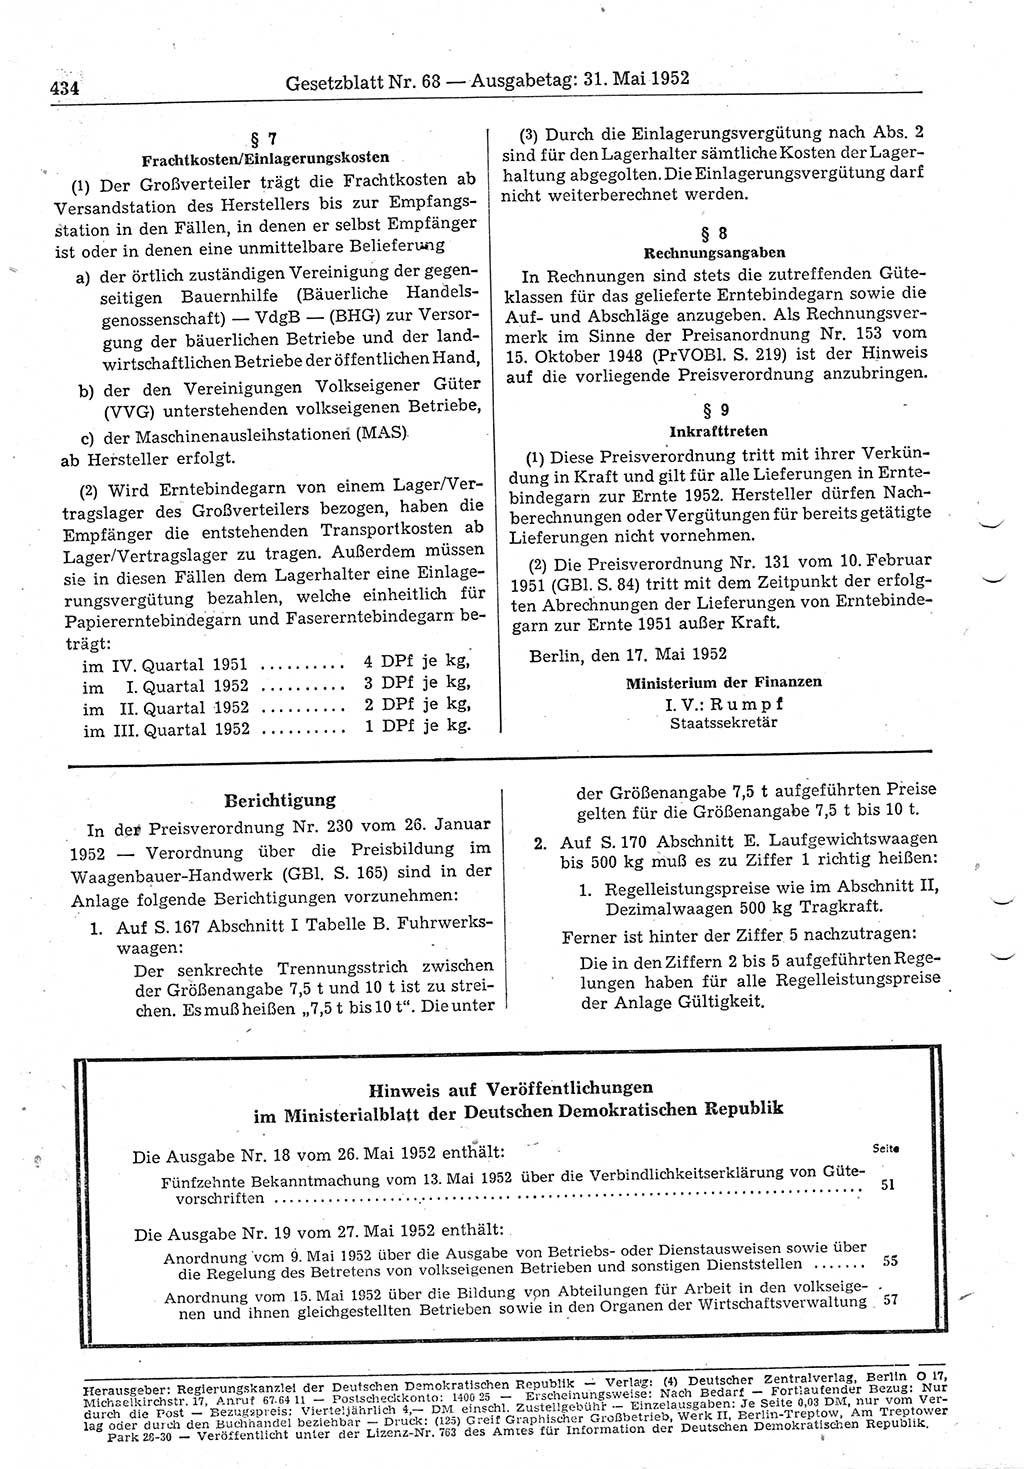 Gesetzblatt (GBl.) der Deutschen Demokratischen Republik (DDR) 1952, Seite 434 (GBl. DDR 1952, S. 434)